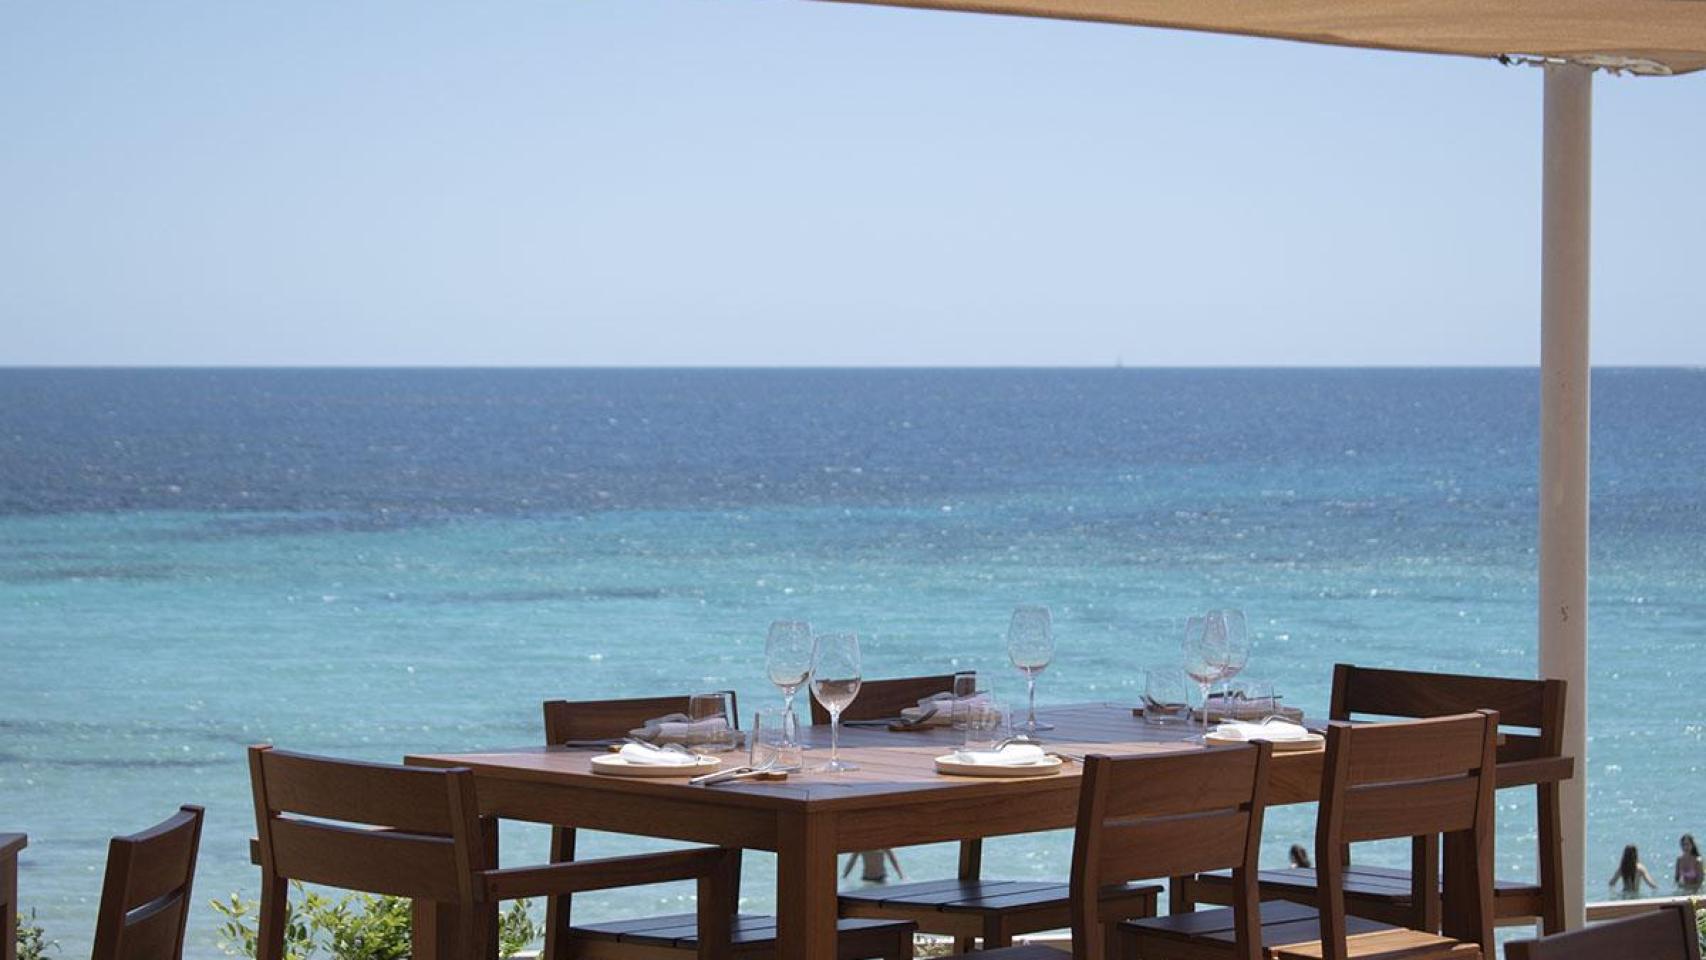 Cuatro chefs y cuatro restaurantes a los que seguir la pista en Ibiza este verano